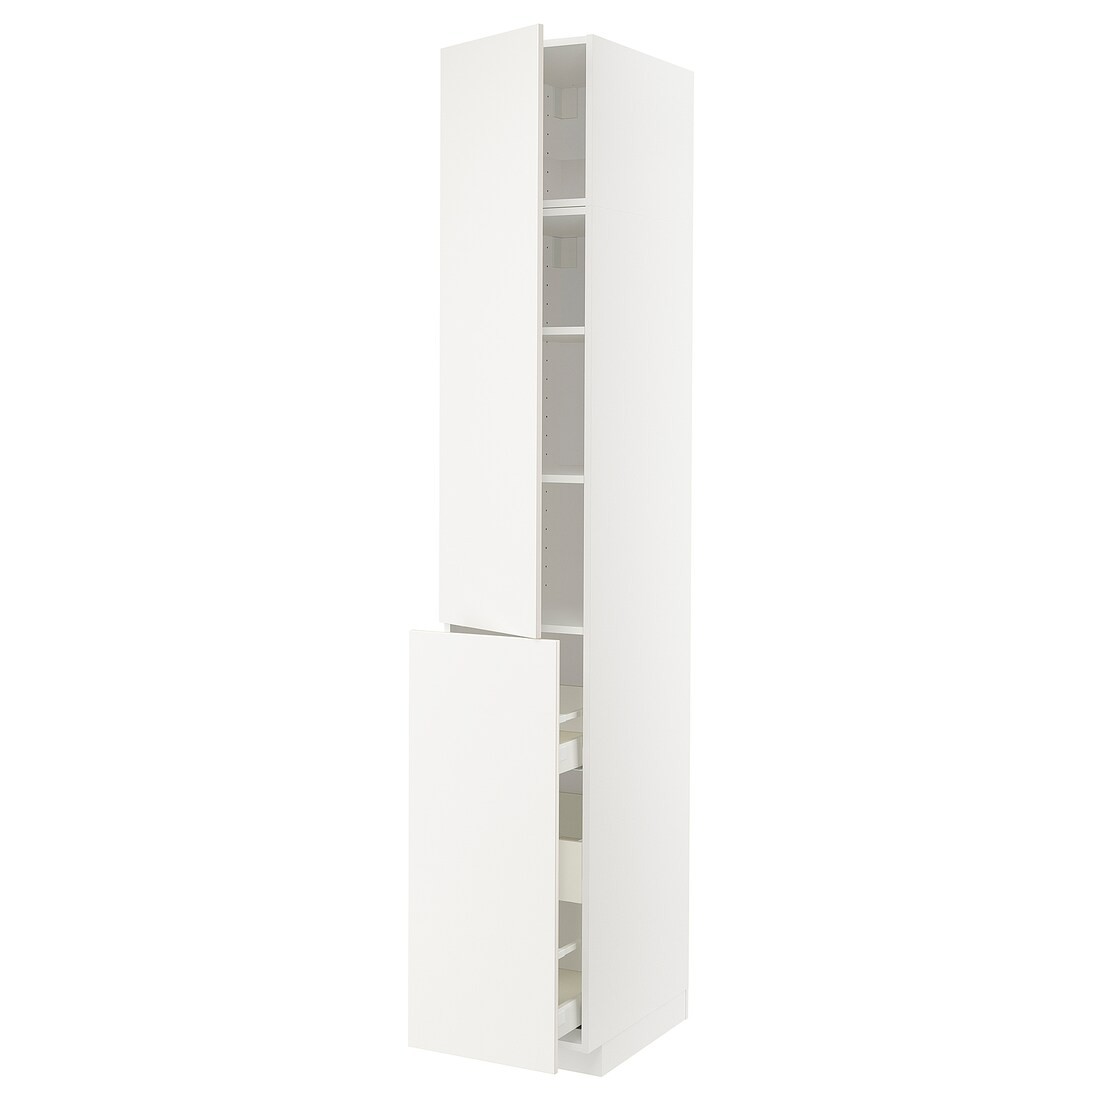 IKEA METOD МЕТОД / MAXIMERA МАКСИМЕРА Высокий шкаф 3 ящика / 1 дверь / 2 полки, белый / Veddinge белый, 40x60x240 см 59459044 | 594.590.44